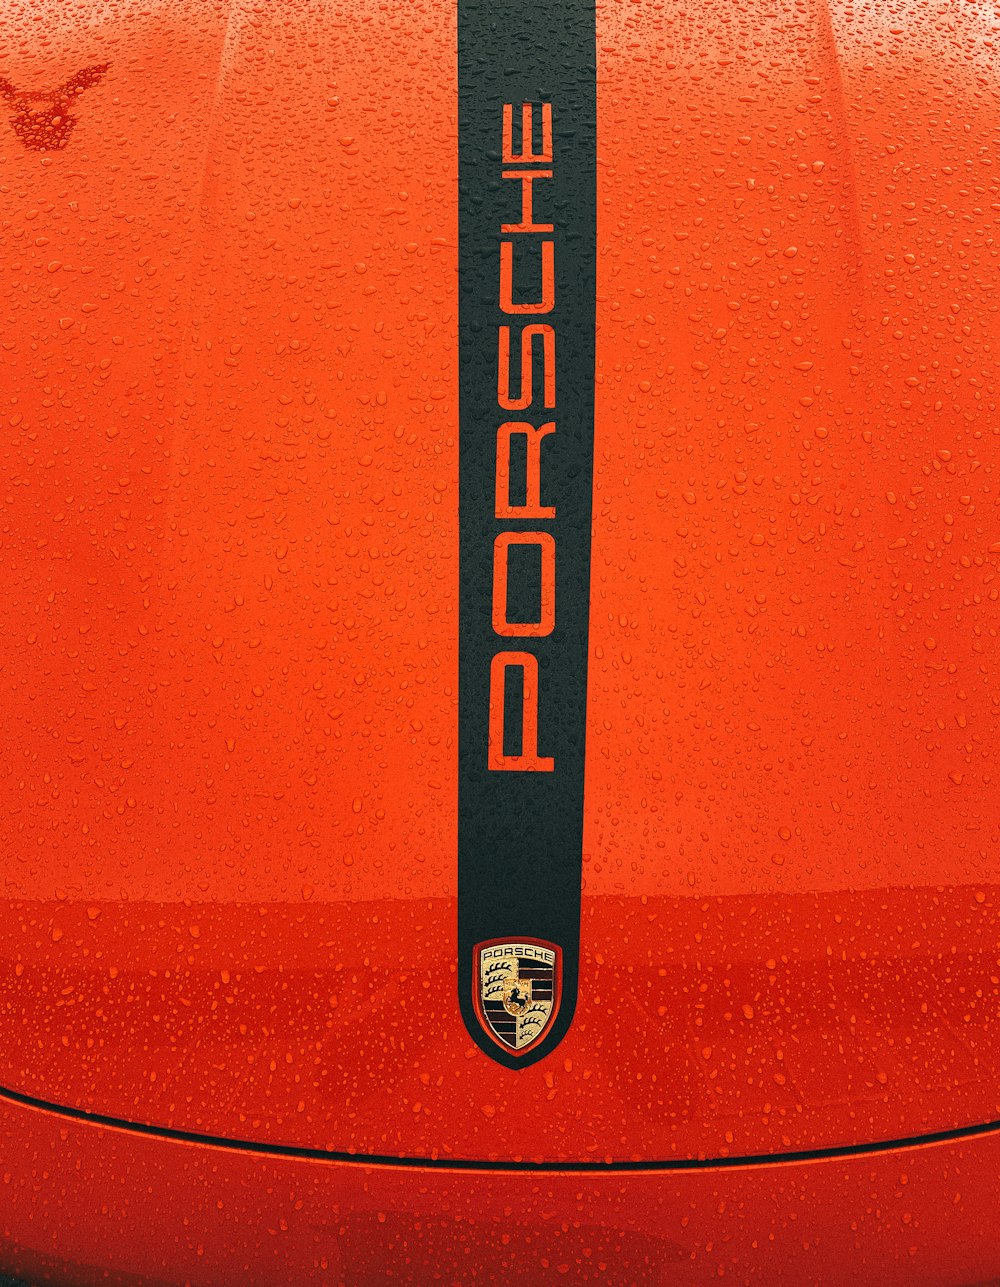 a close up of a porsche emblem on a car